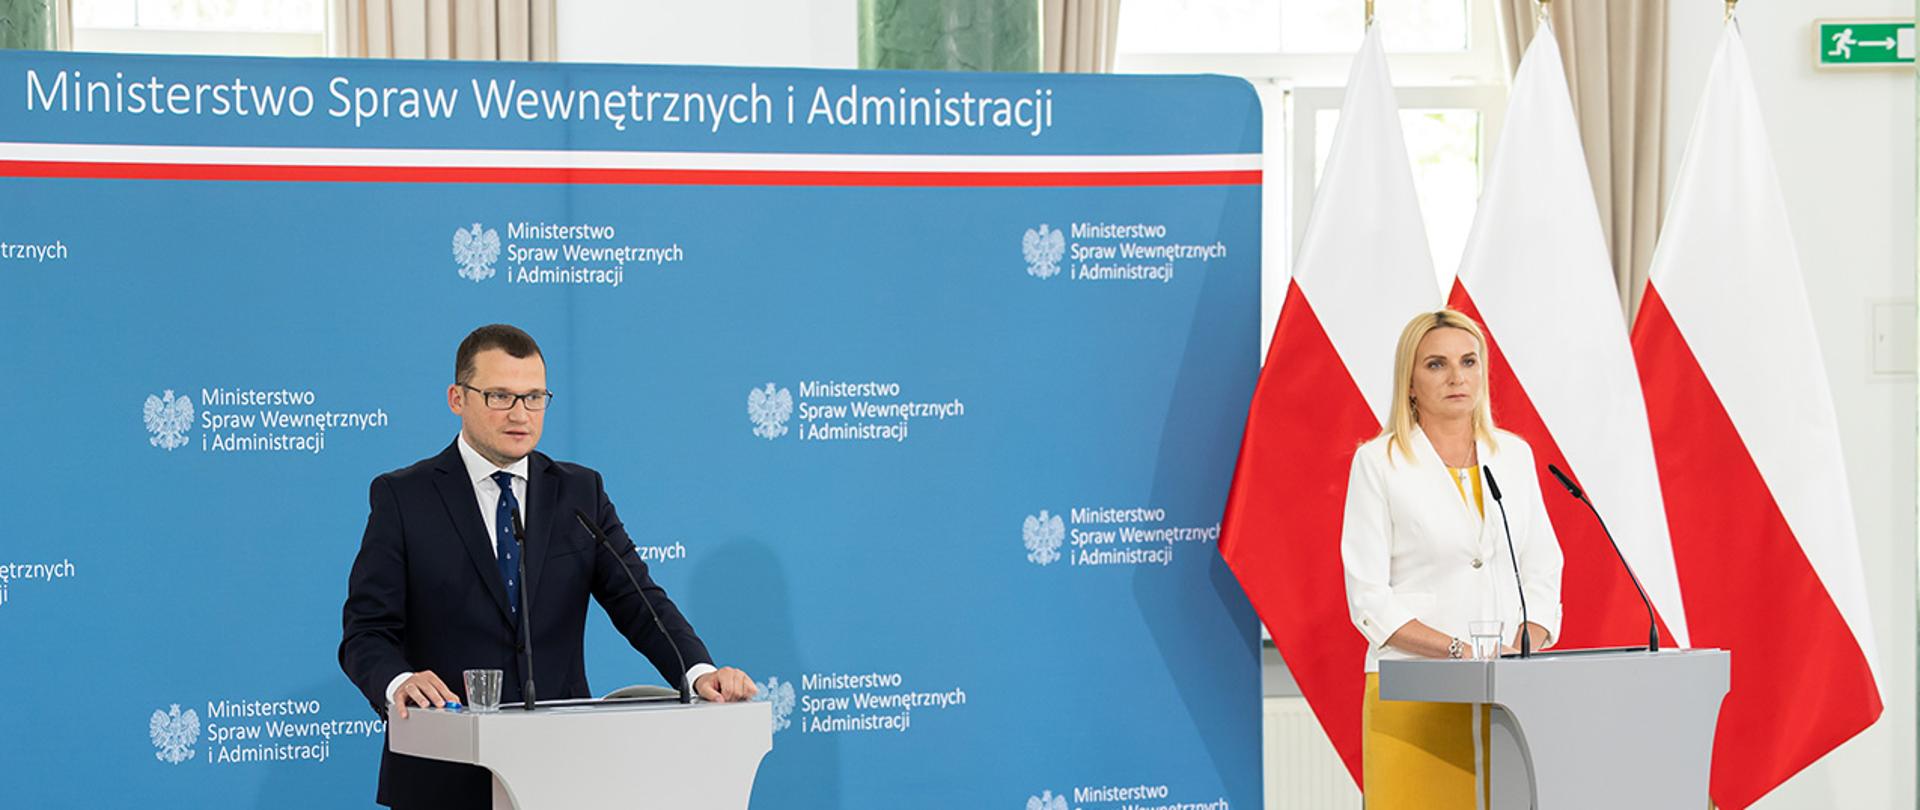 Na zdjęciu widać wiceministra Pawła Szefernakera i ministra-członka Rady Ministrów Agnieszkę Ścigaj stojących za mównicami.